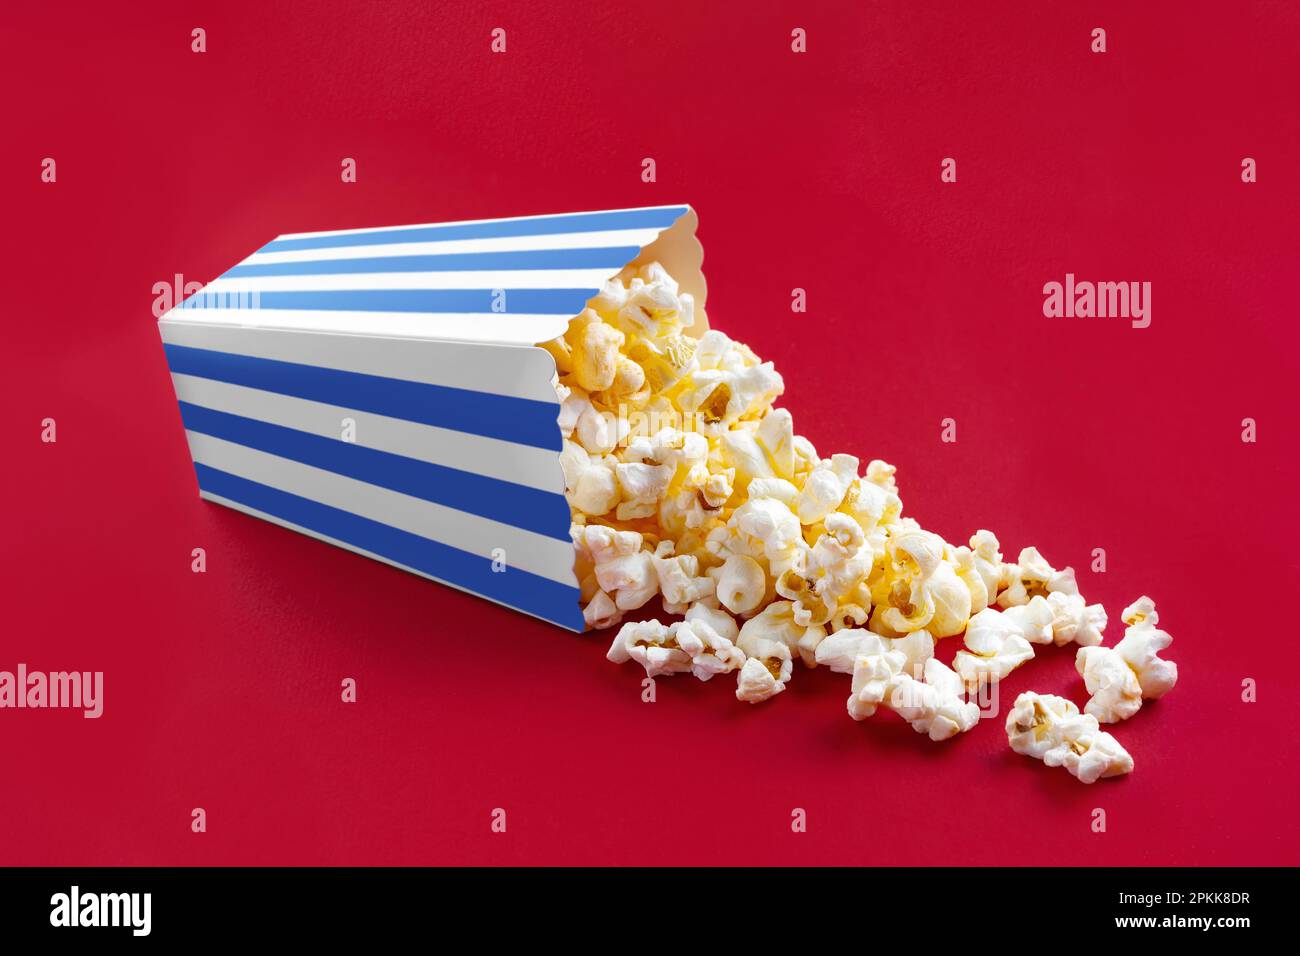 Gustoso popcorn al formaggio che cade da un secchio di cartone a strisce blu, isolato su sfondo rosso. Dispersione di grani di popcorn. Film, cinema e intrattenimento Foto Stock